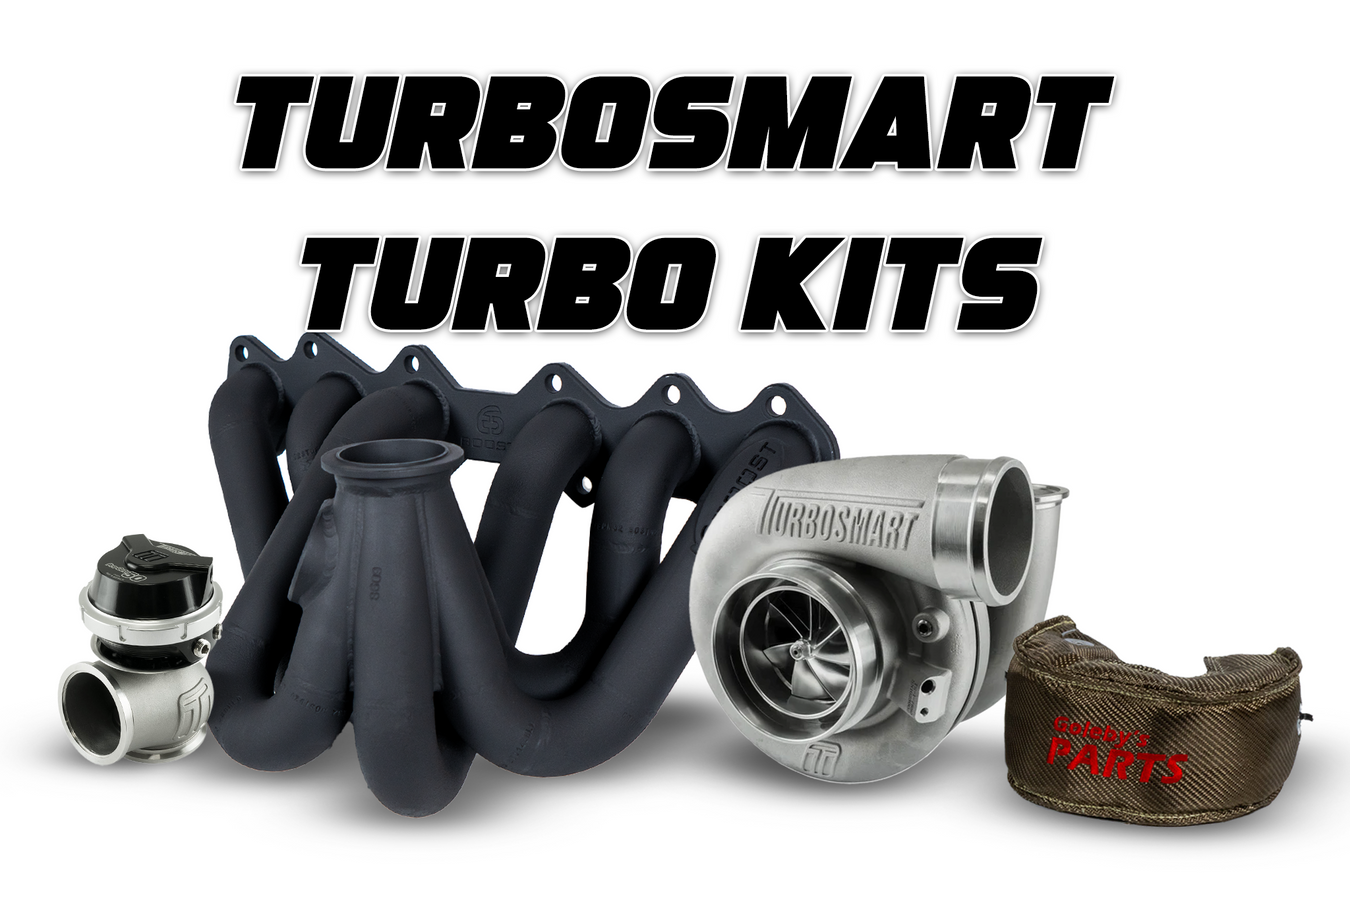 Turbosmart Turbo Kits